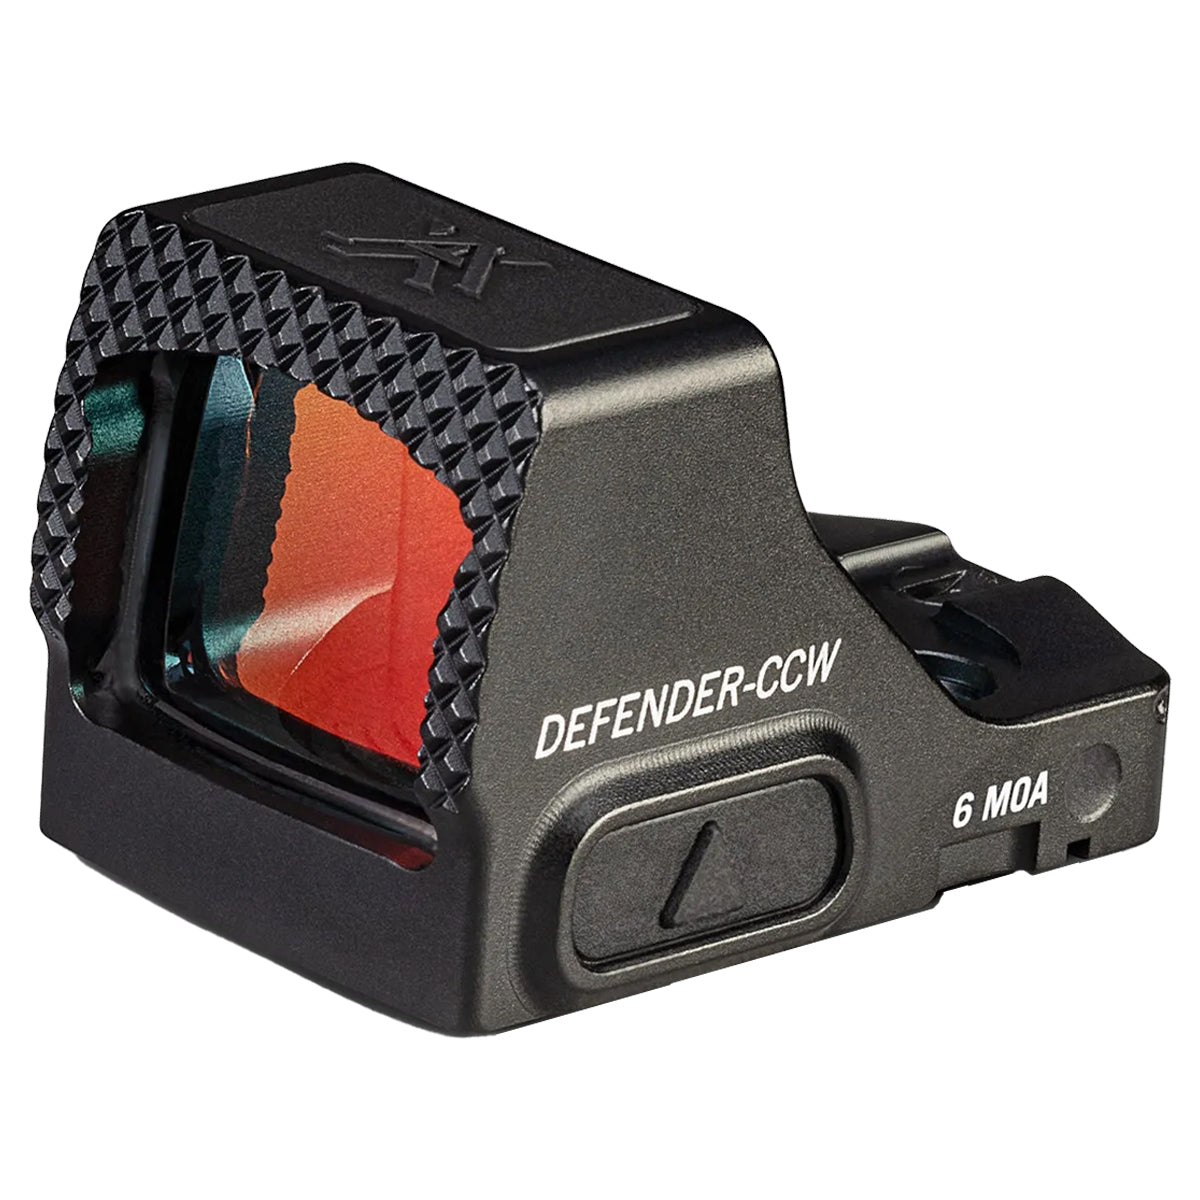 Vortex Defender CCW Red Dot Sight in  by GOHUNT | Vortex Optics - GOHUNT Shop